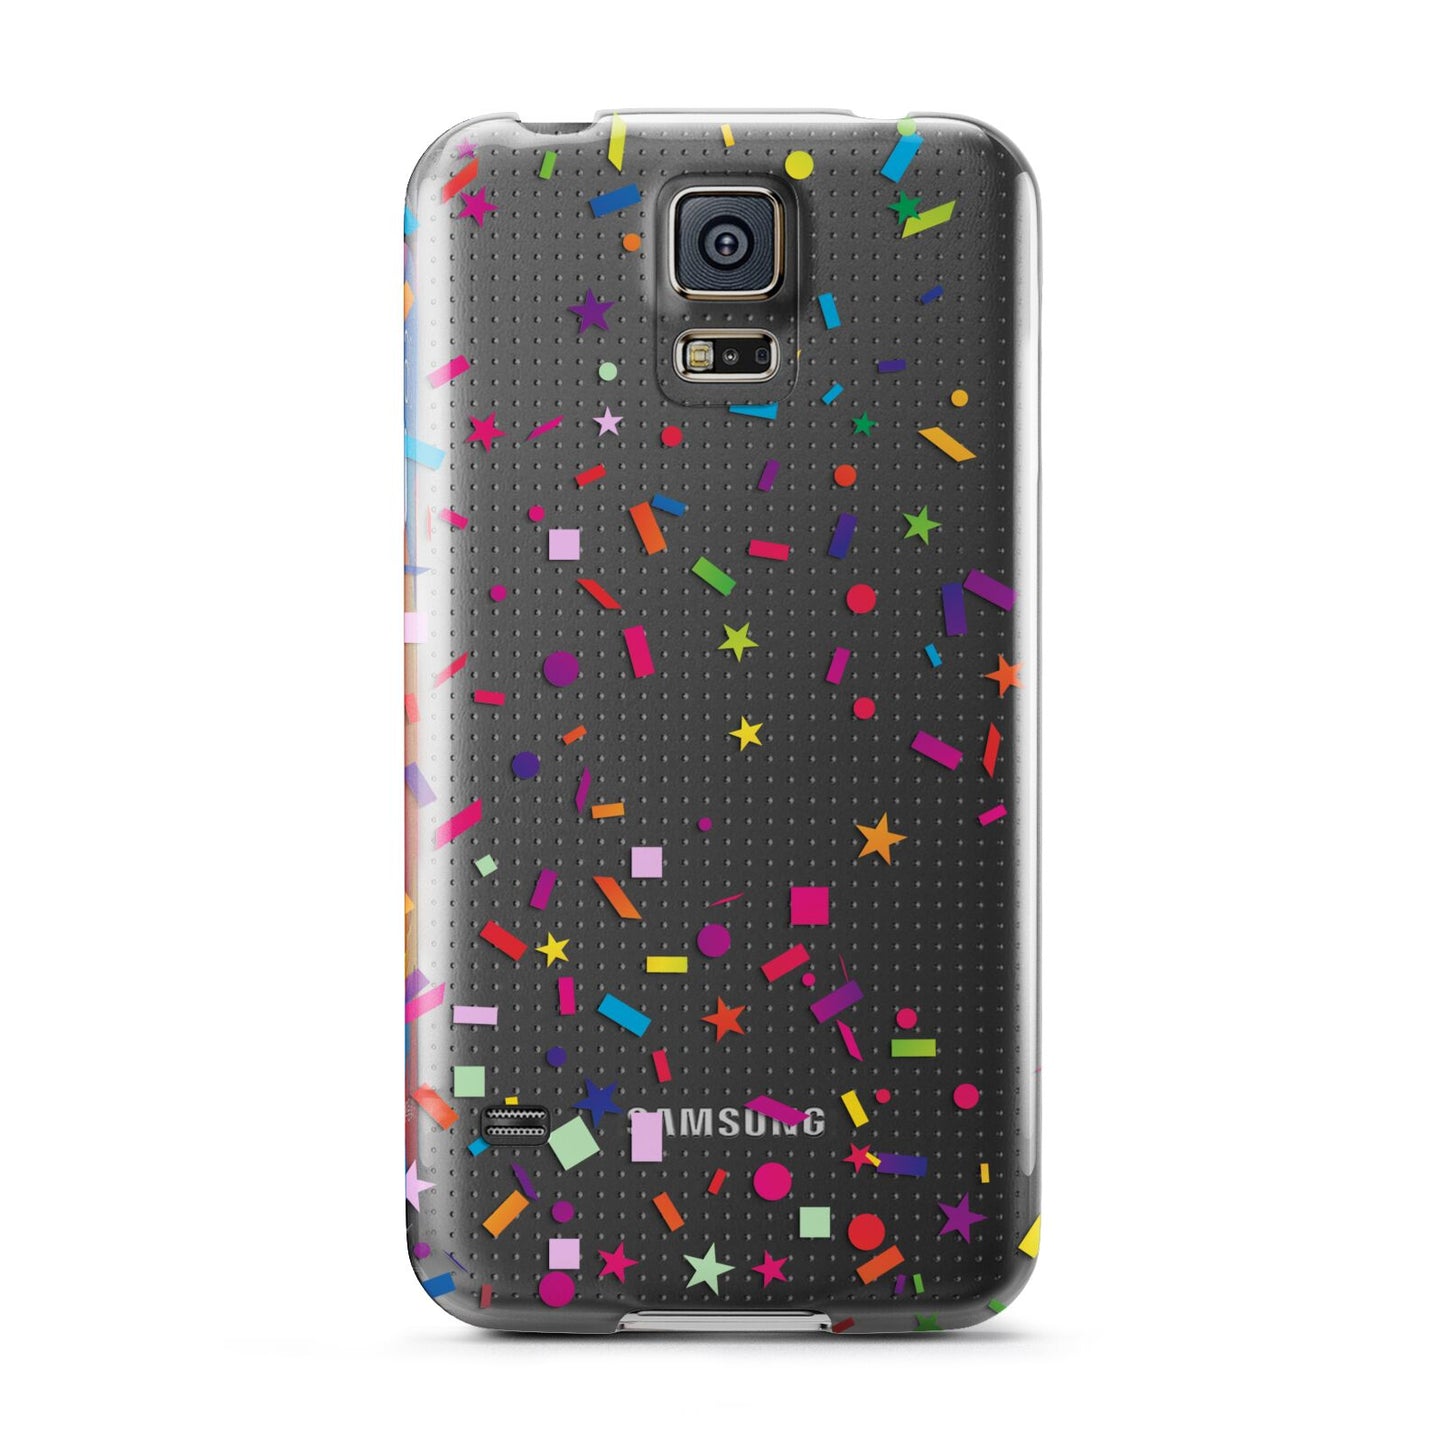 Confetti Samsung Galaxy S5 Case